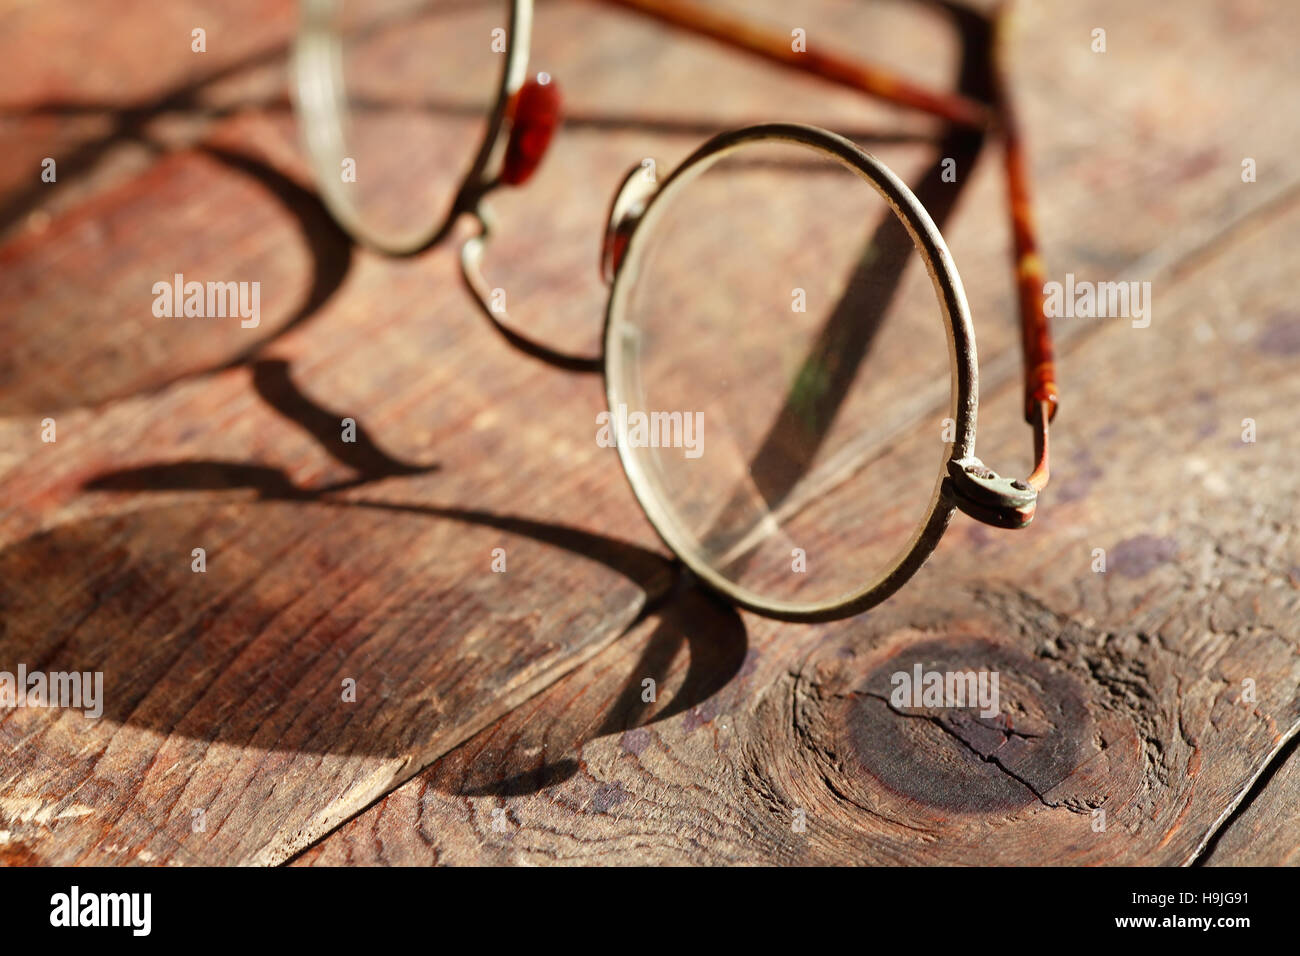 Old vintage lunettes libre sur beau fond de bois Banque D'Images